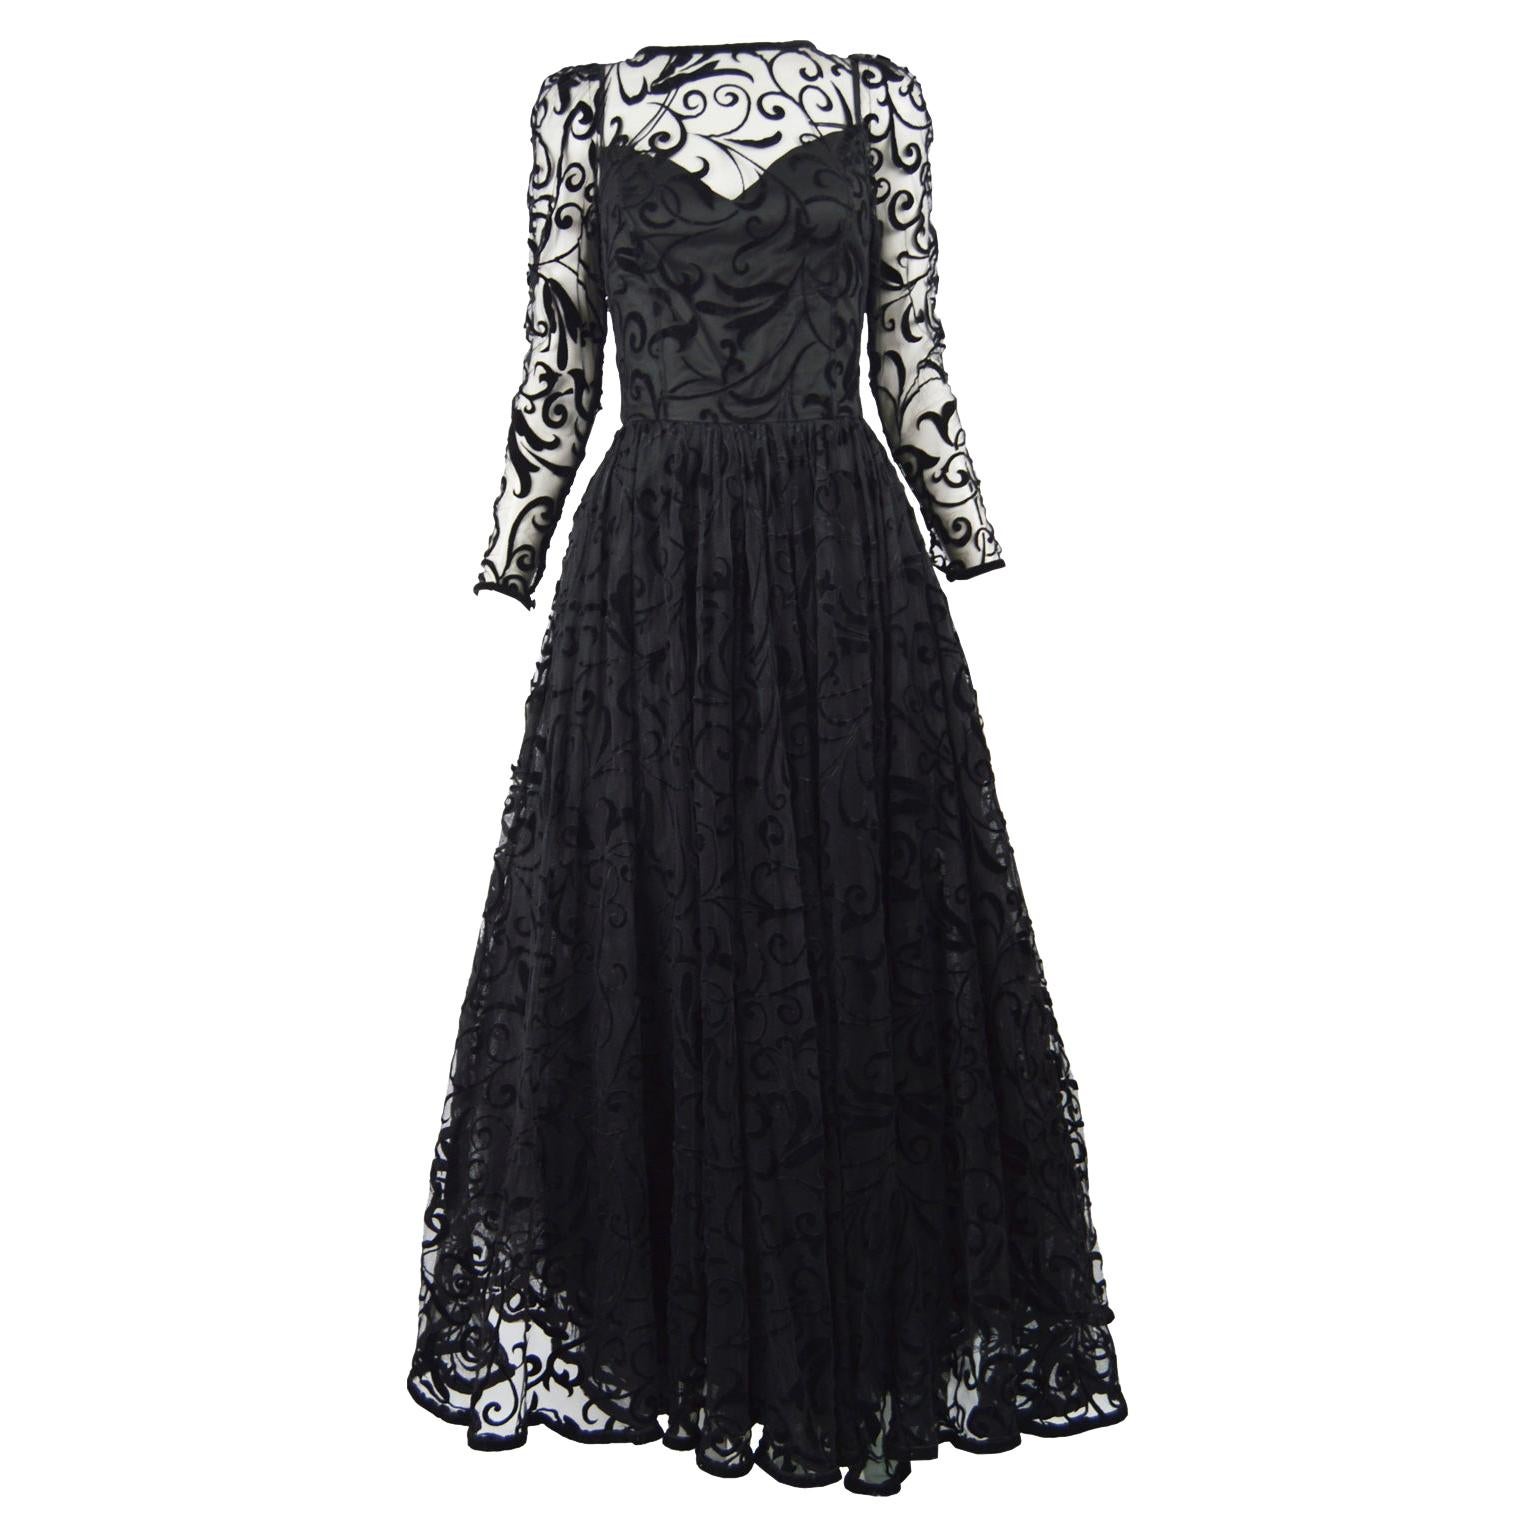 Caroline Charles Flocked Velvet on Tulle Vintage Formal Evening Dress, A/W 1993 For Sale